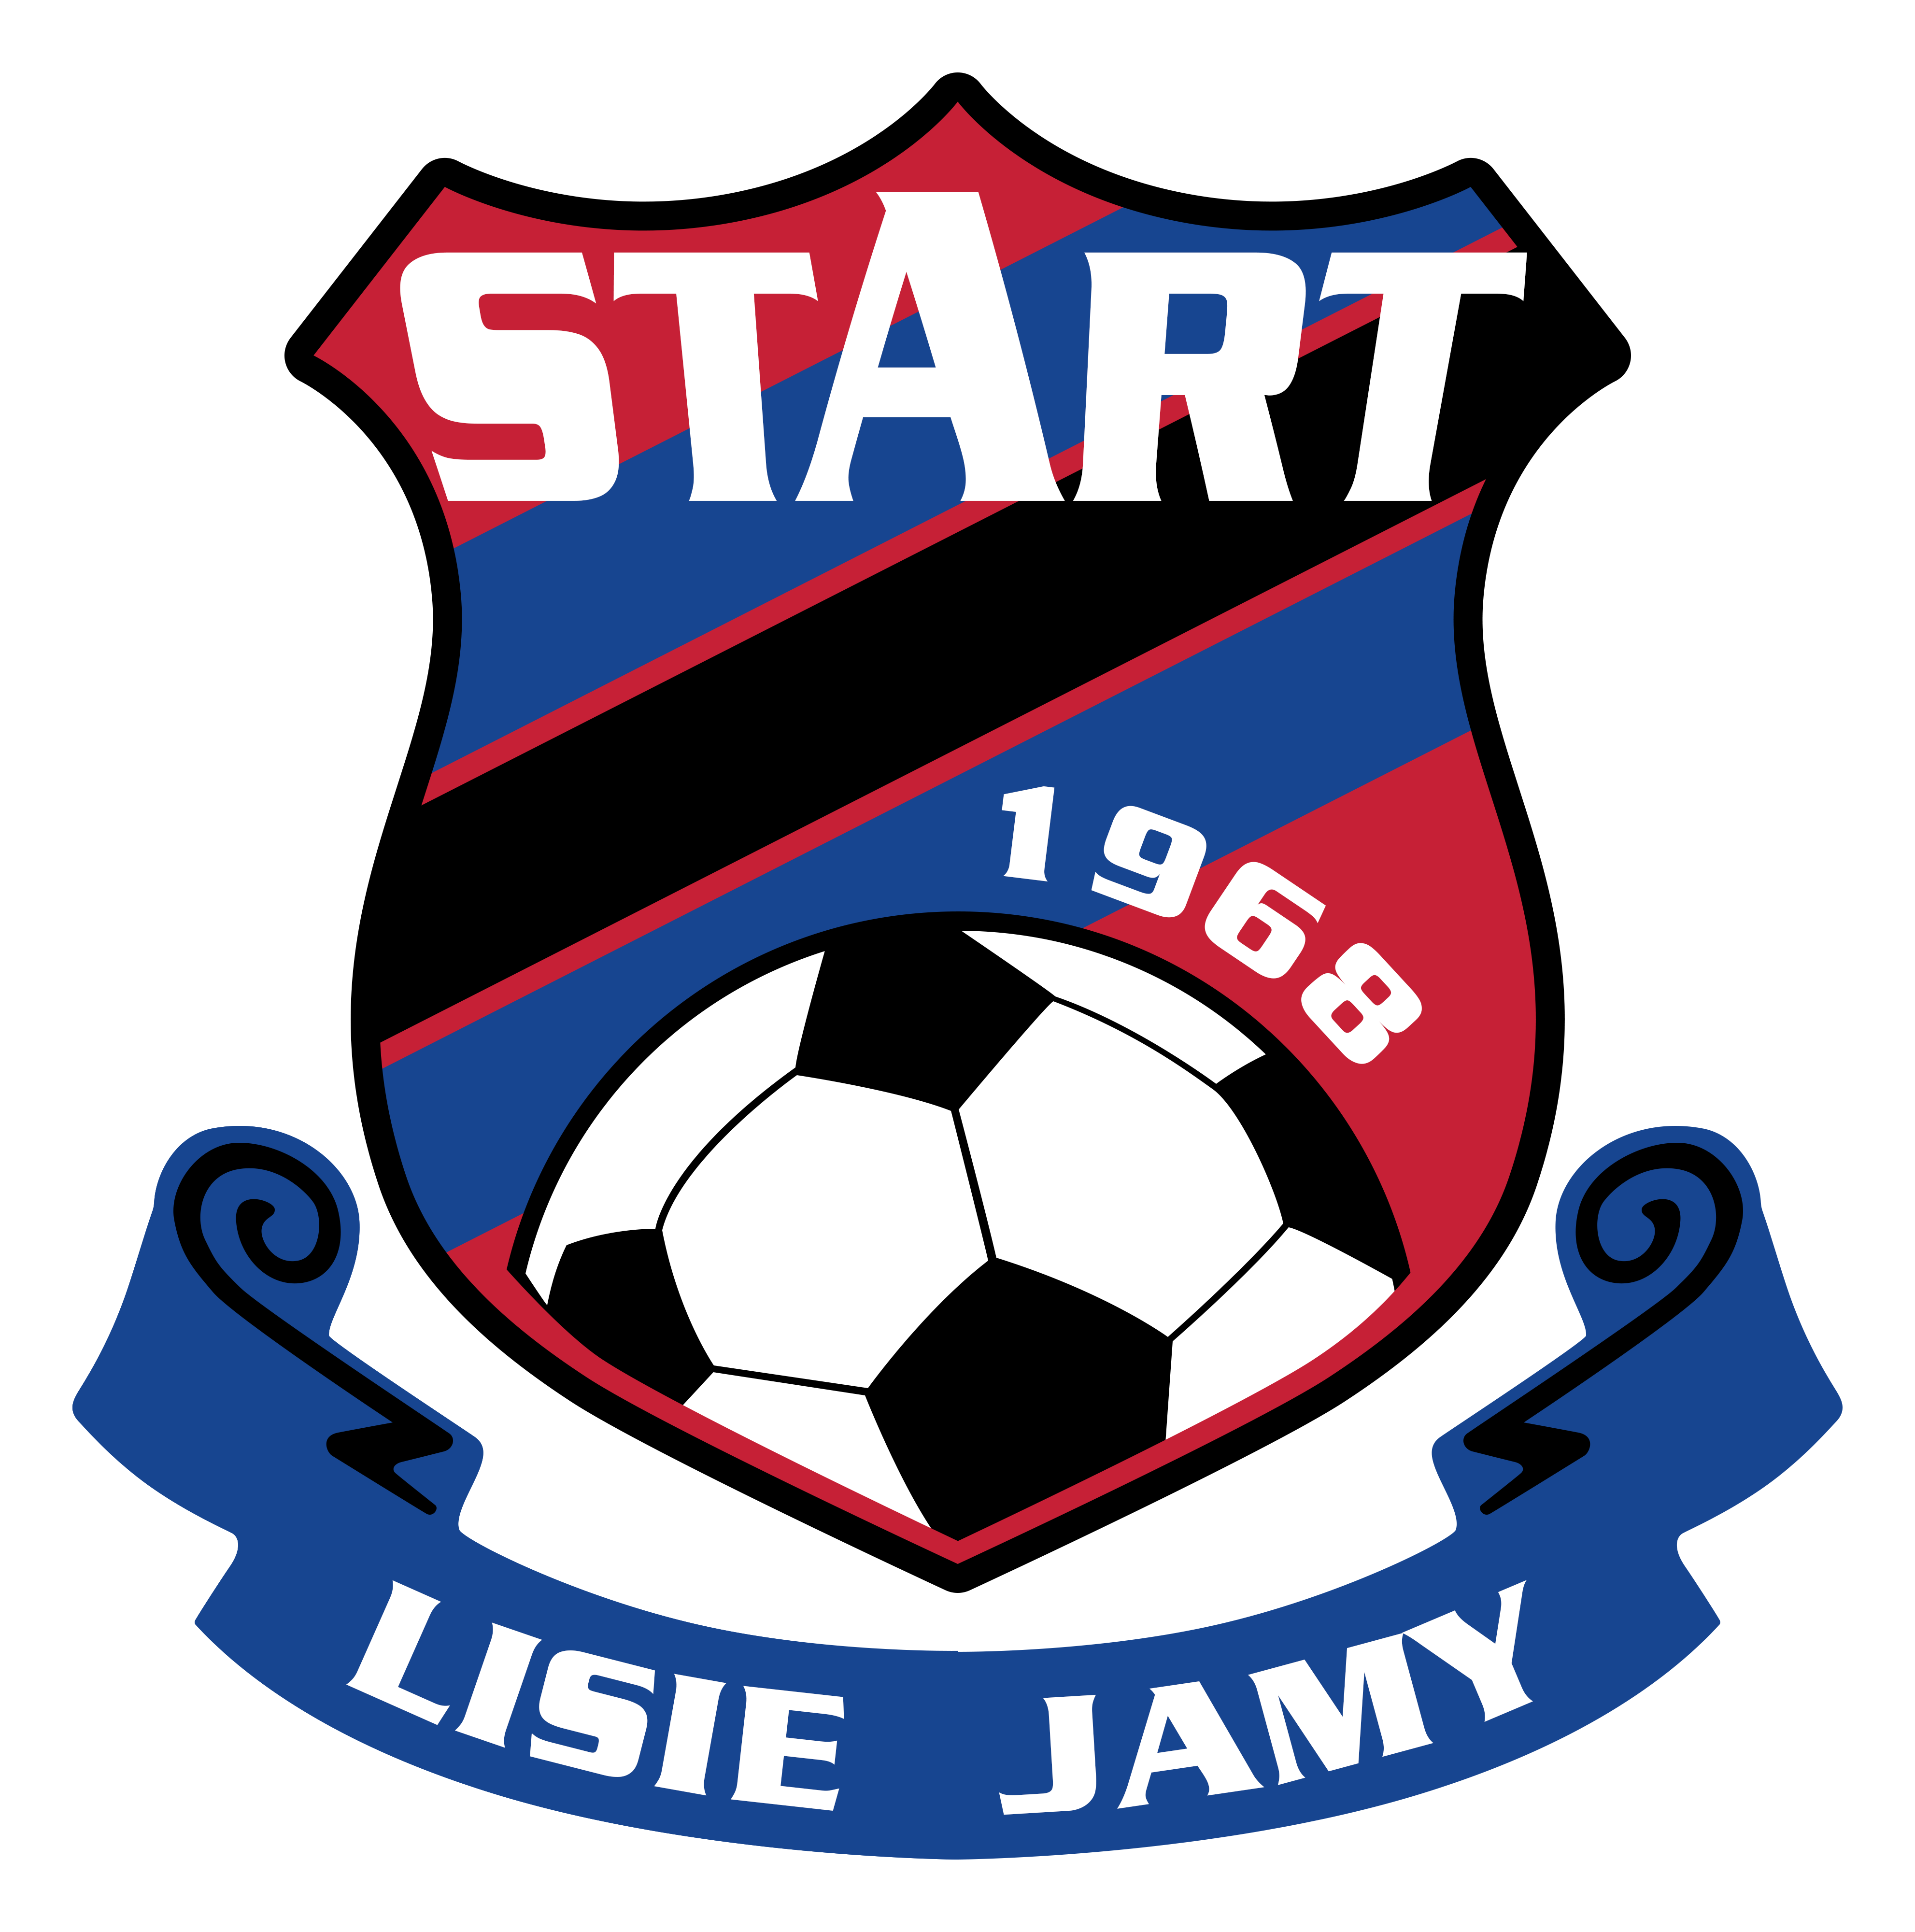 Start Lisie Jamy